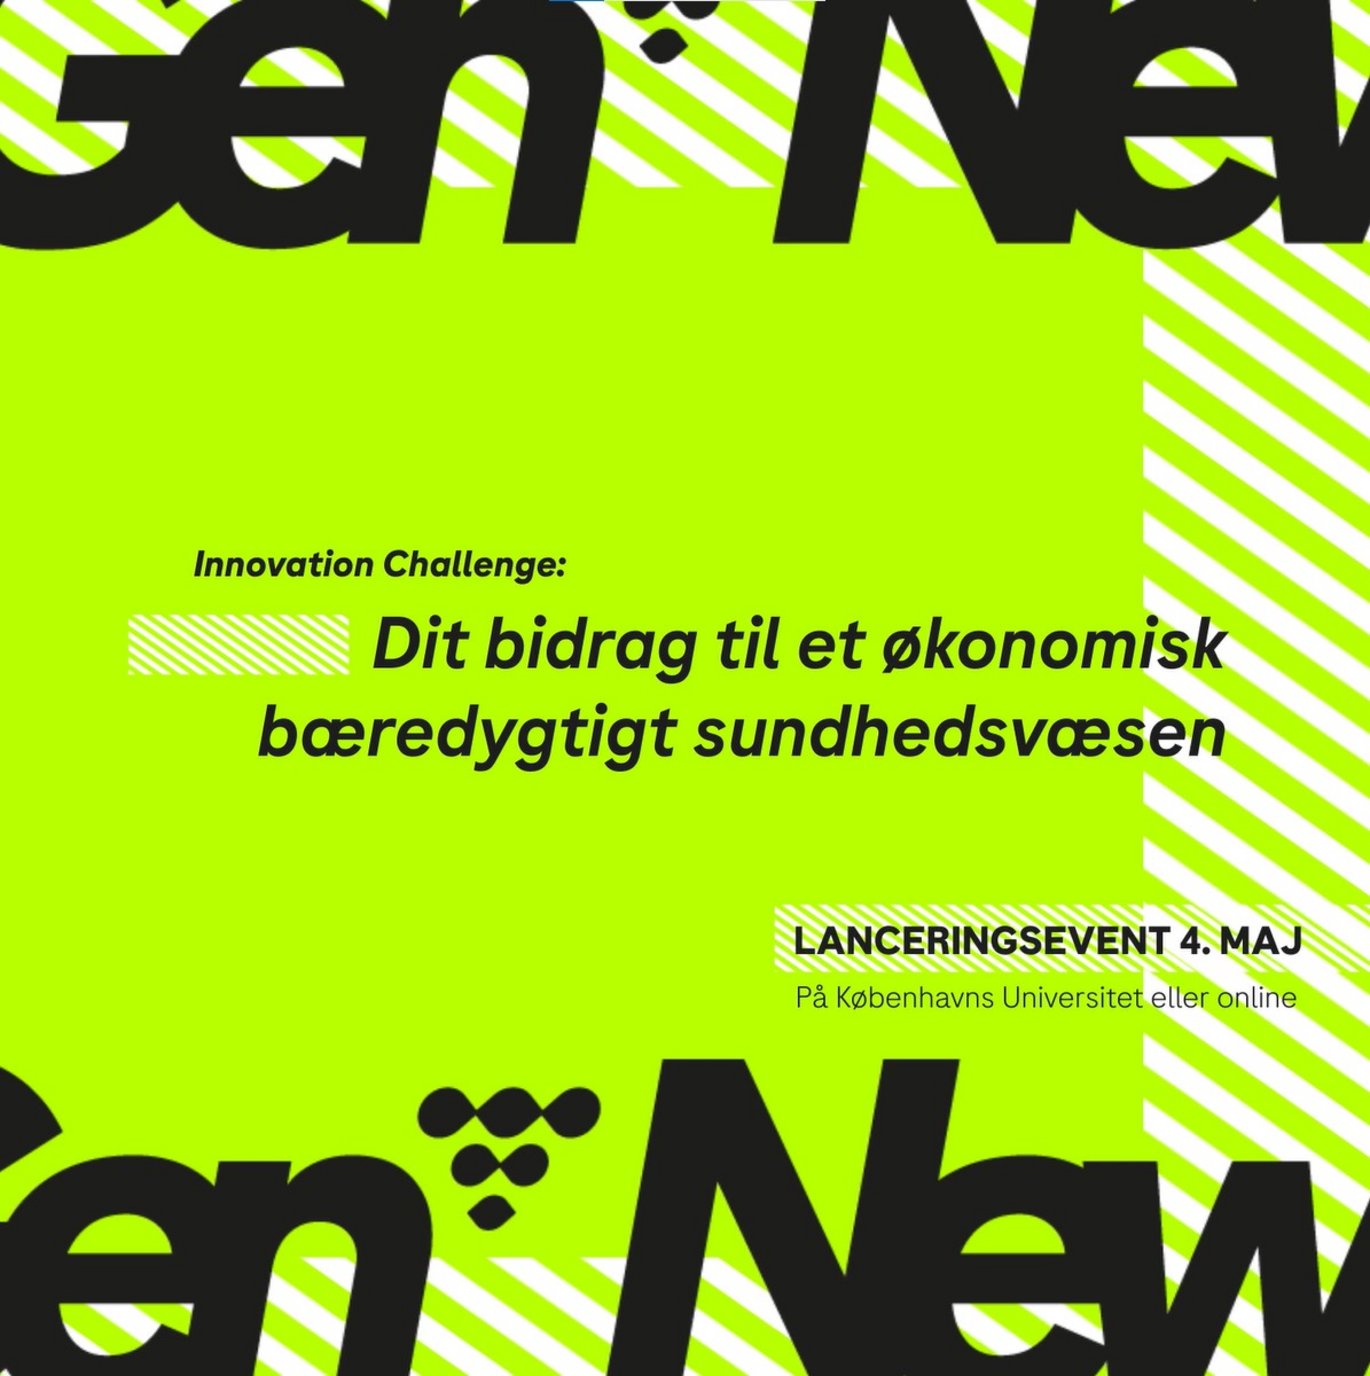 NewGen 2022 lanceringsevent d. 4. maj 2022